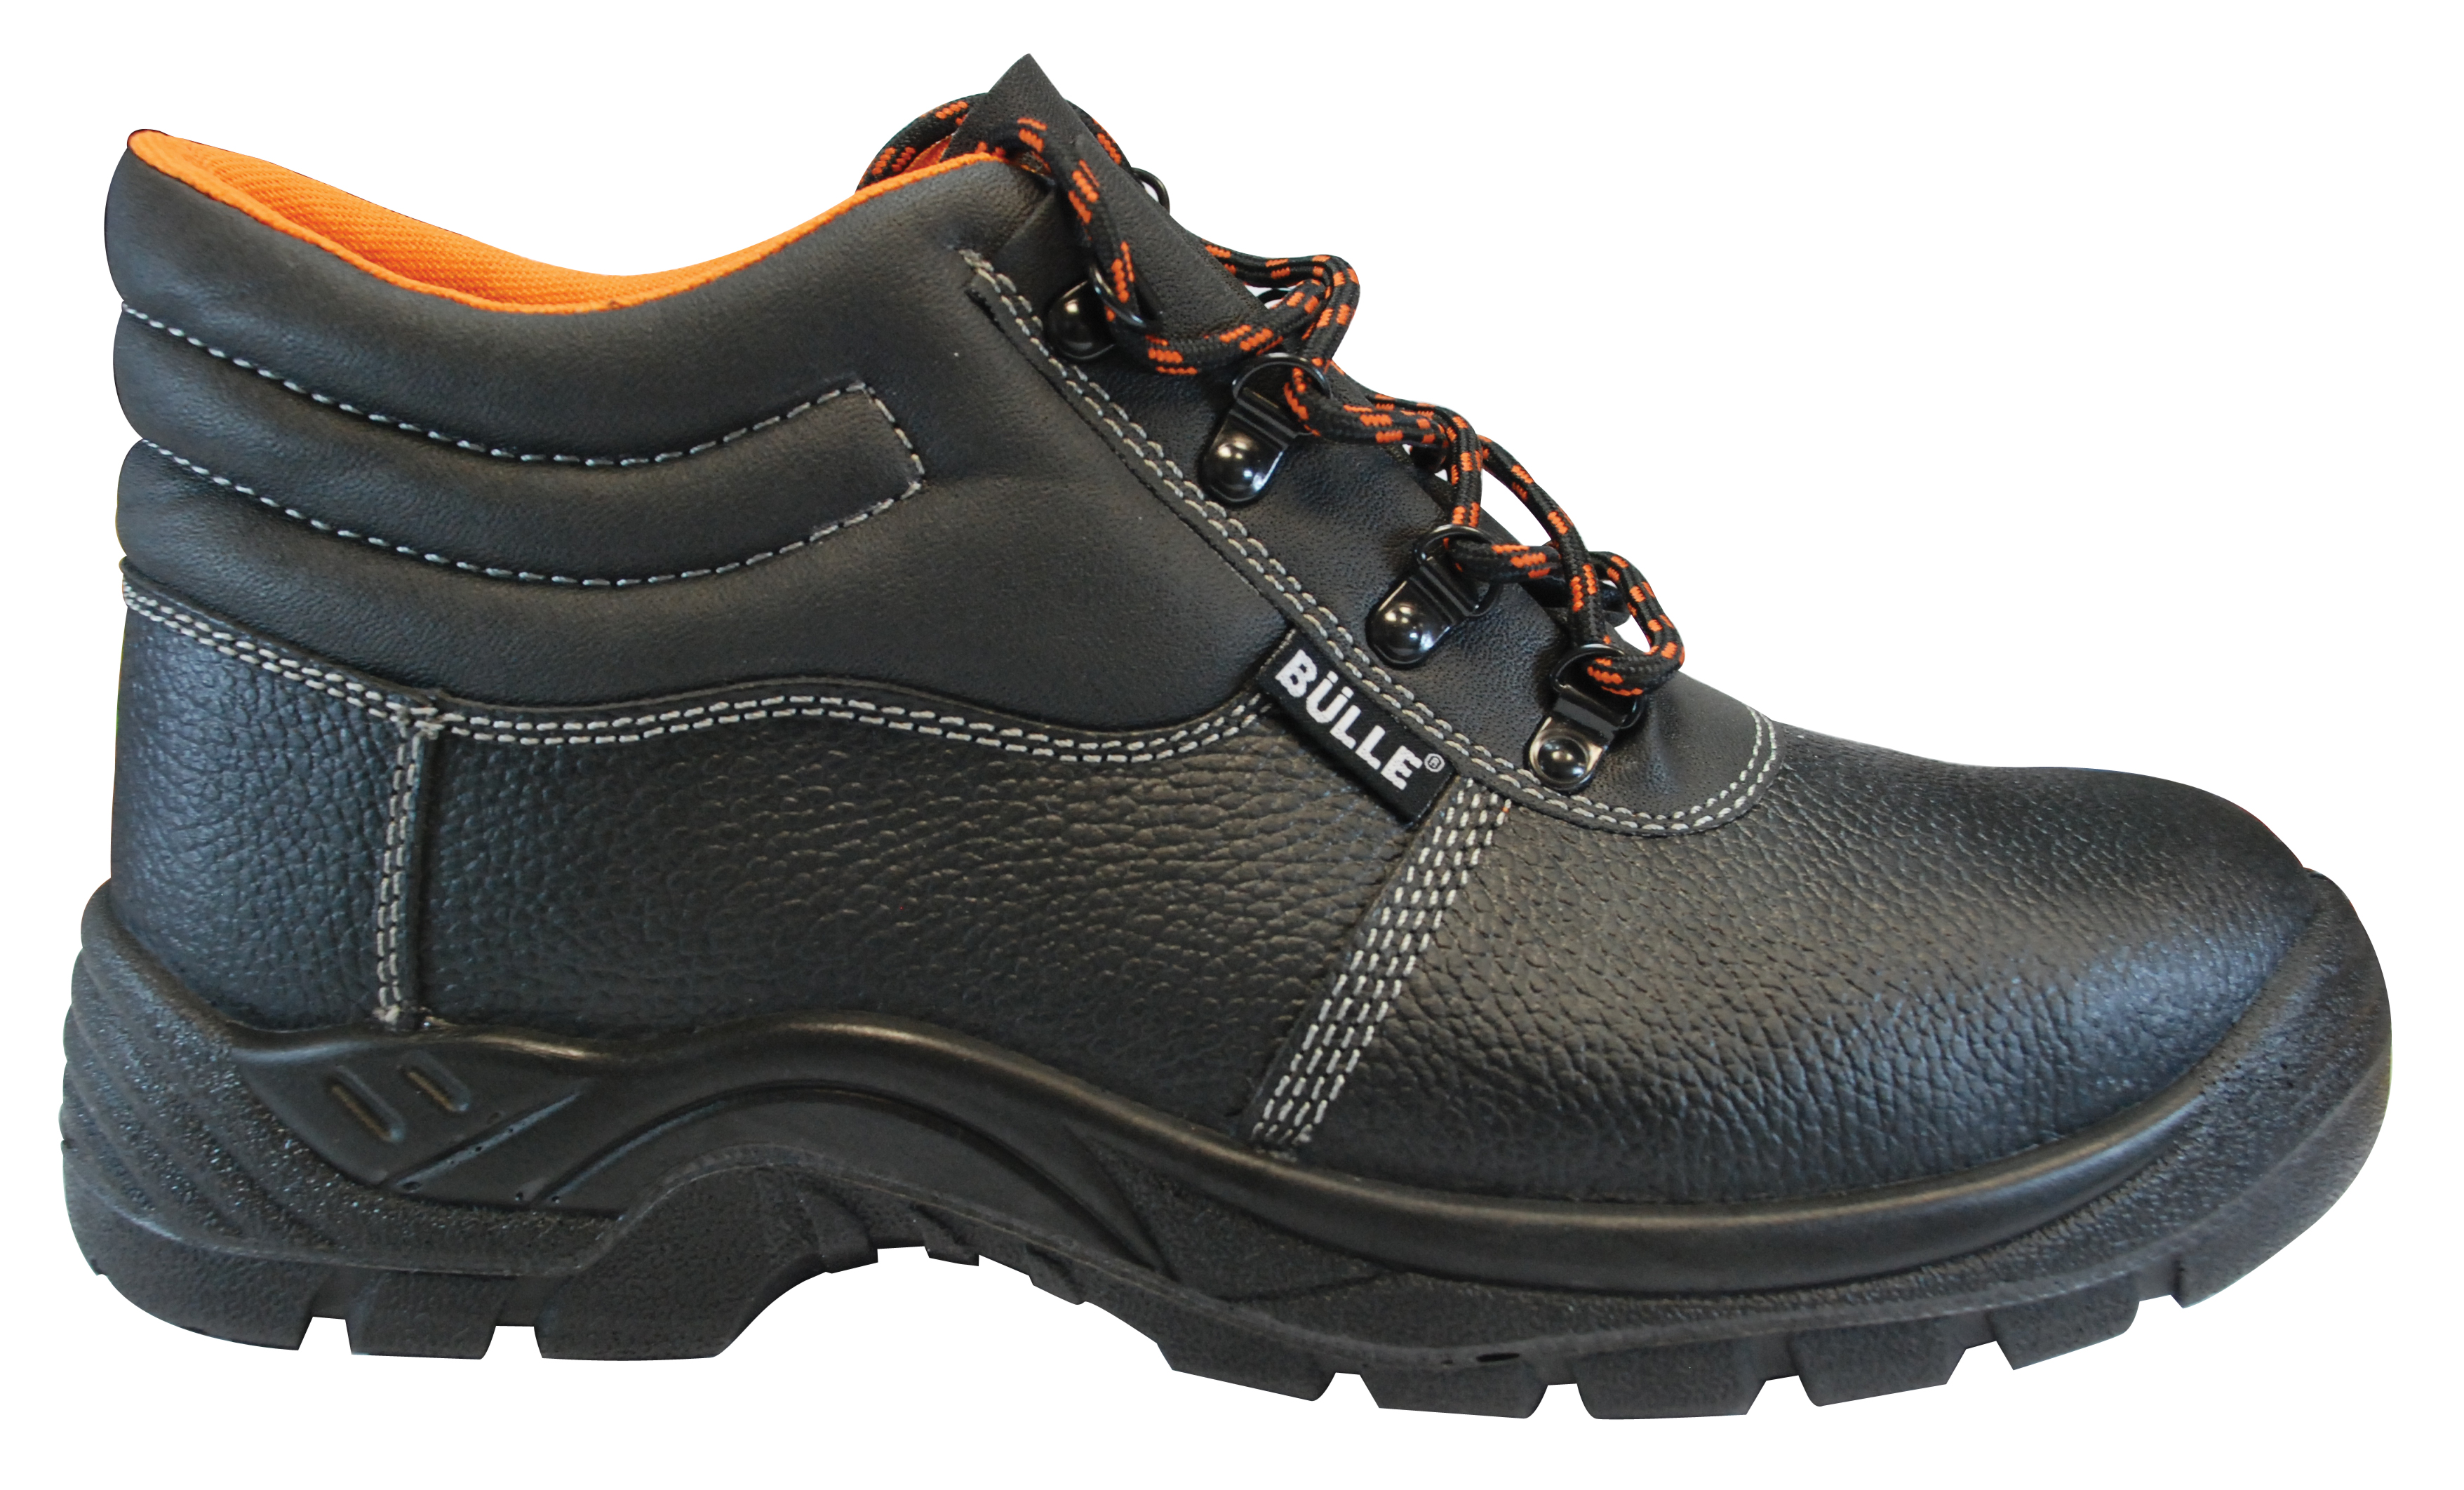 Παπούτσια Εργασίας με προστασία S3 SRC Bulle - 1